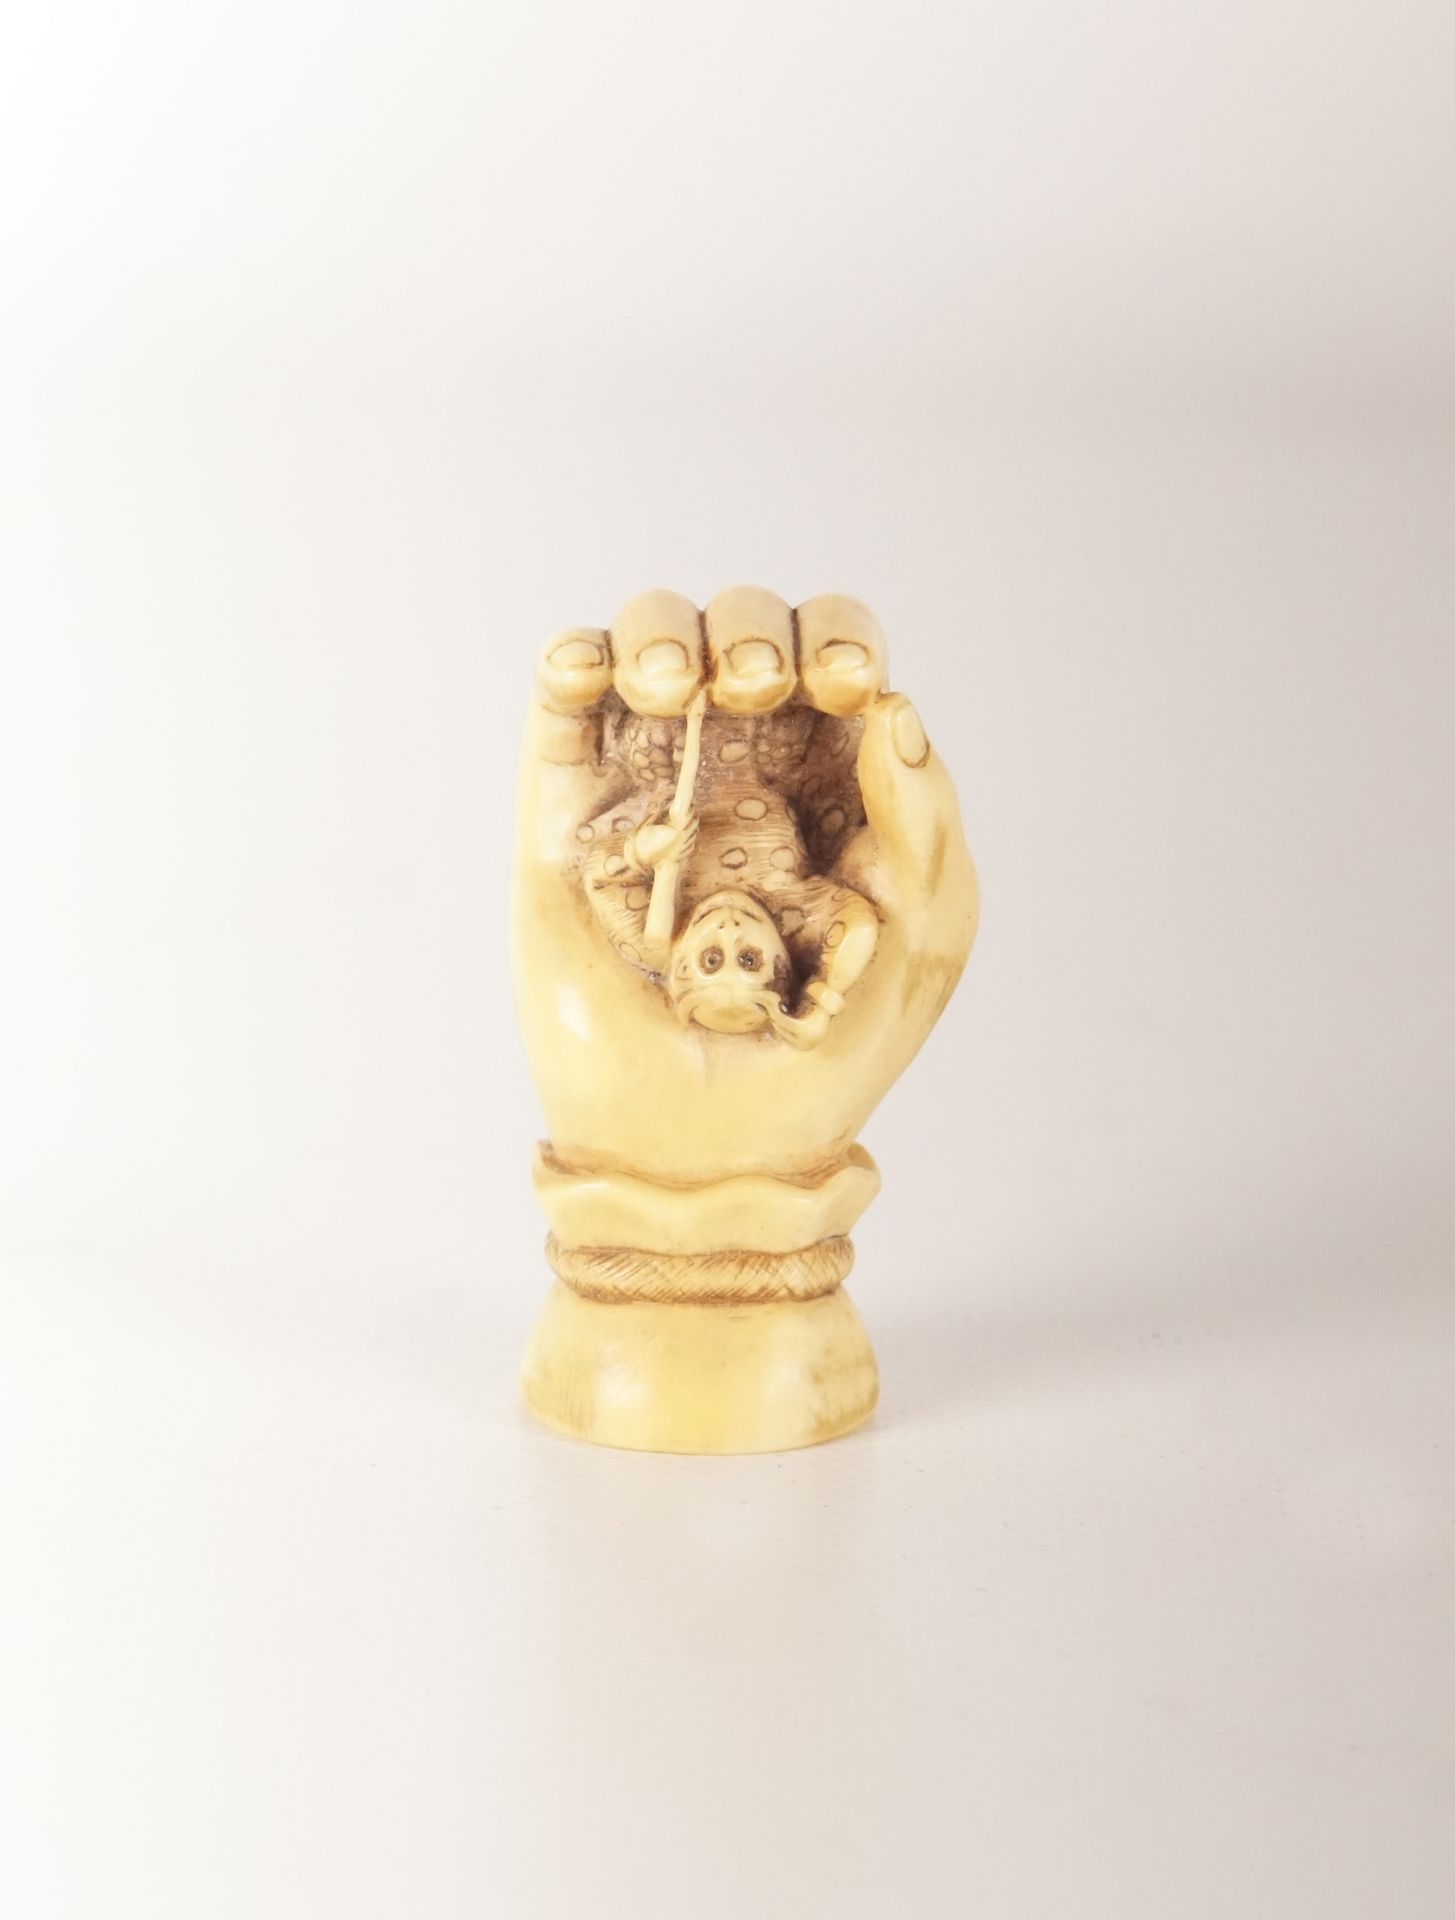 Netsuke - Japon Netsuke a forma di mano che tiene una scimmia nel palmo. 4,9 cm.